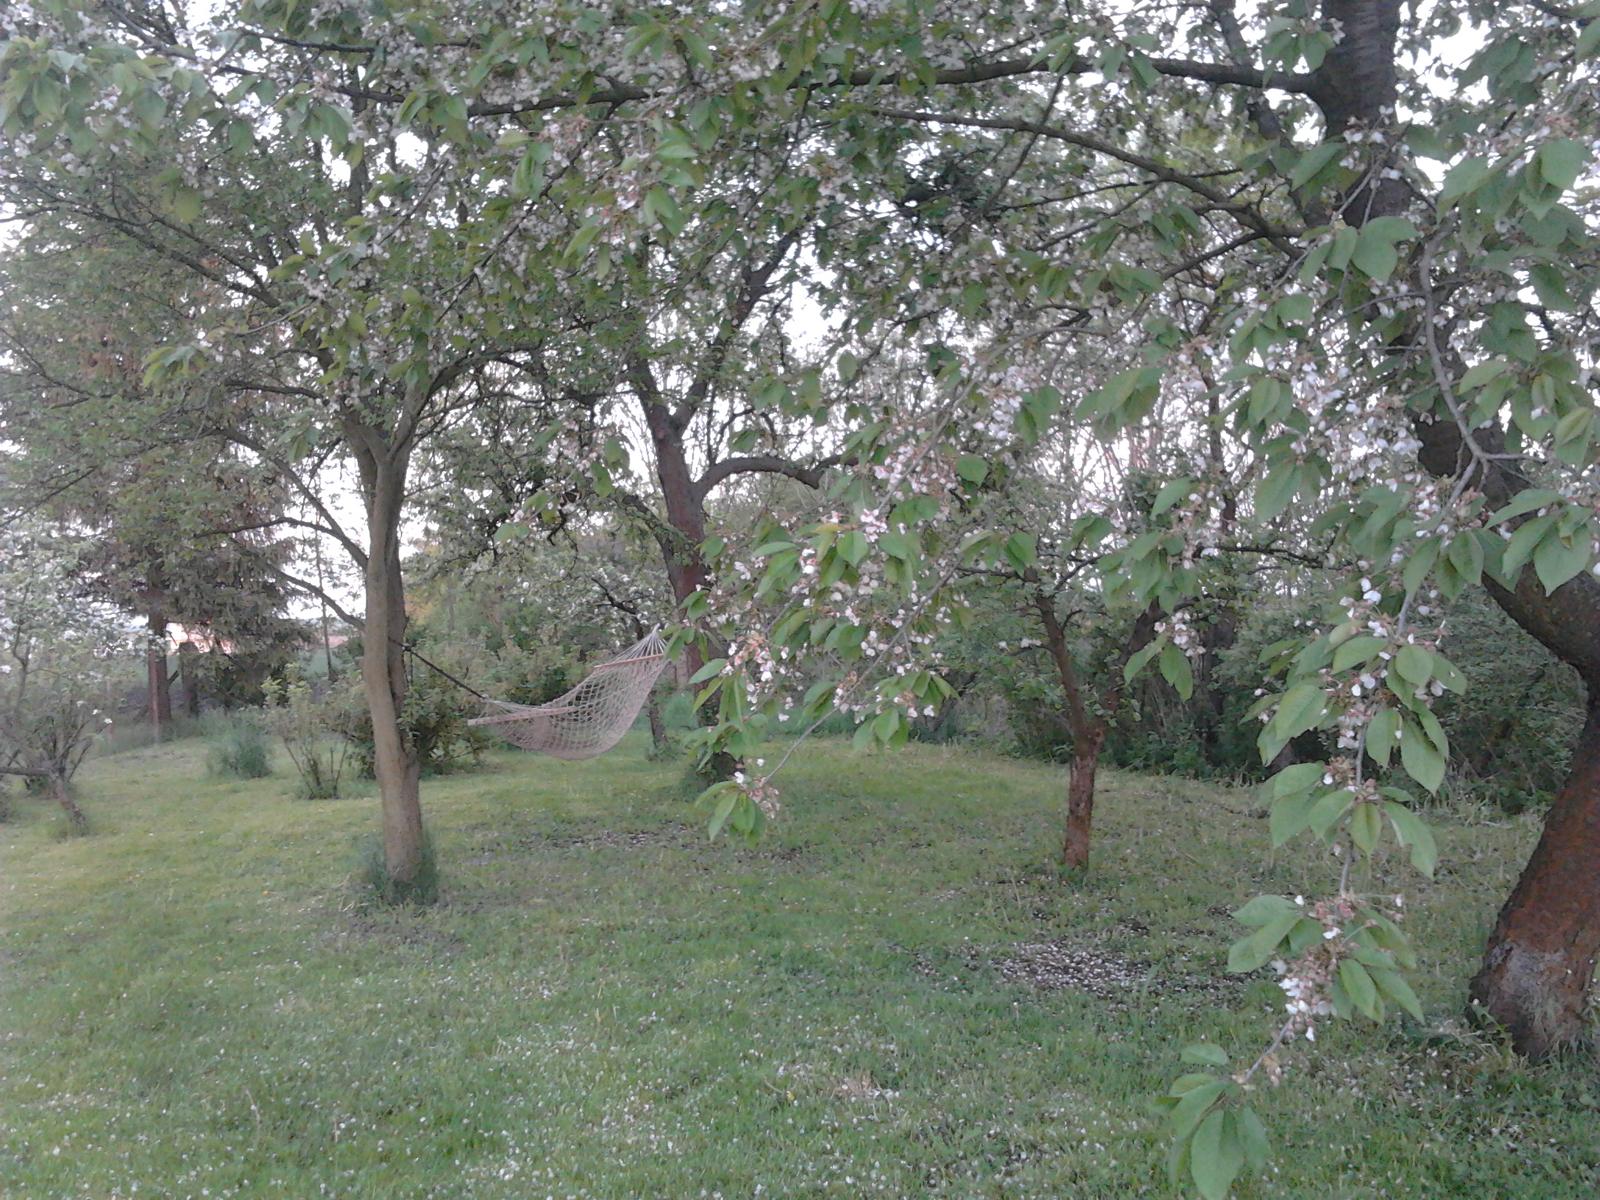 Naše venkovská zahrada - NAŠE OÁZA KLIDU  ... síť je mezi švestkou a hrušní, vedle jabloň, třešeň, vzadu hejno rybízů a ve vzduchu bzukot včel, vůně stromů a zpěv ptáků.